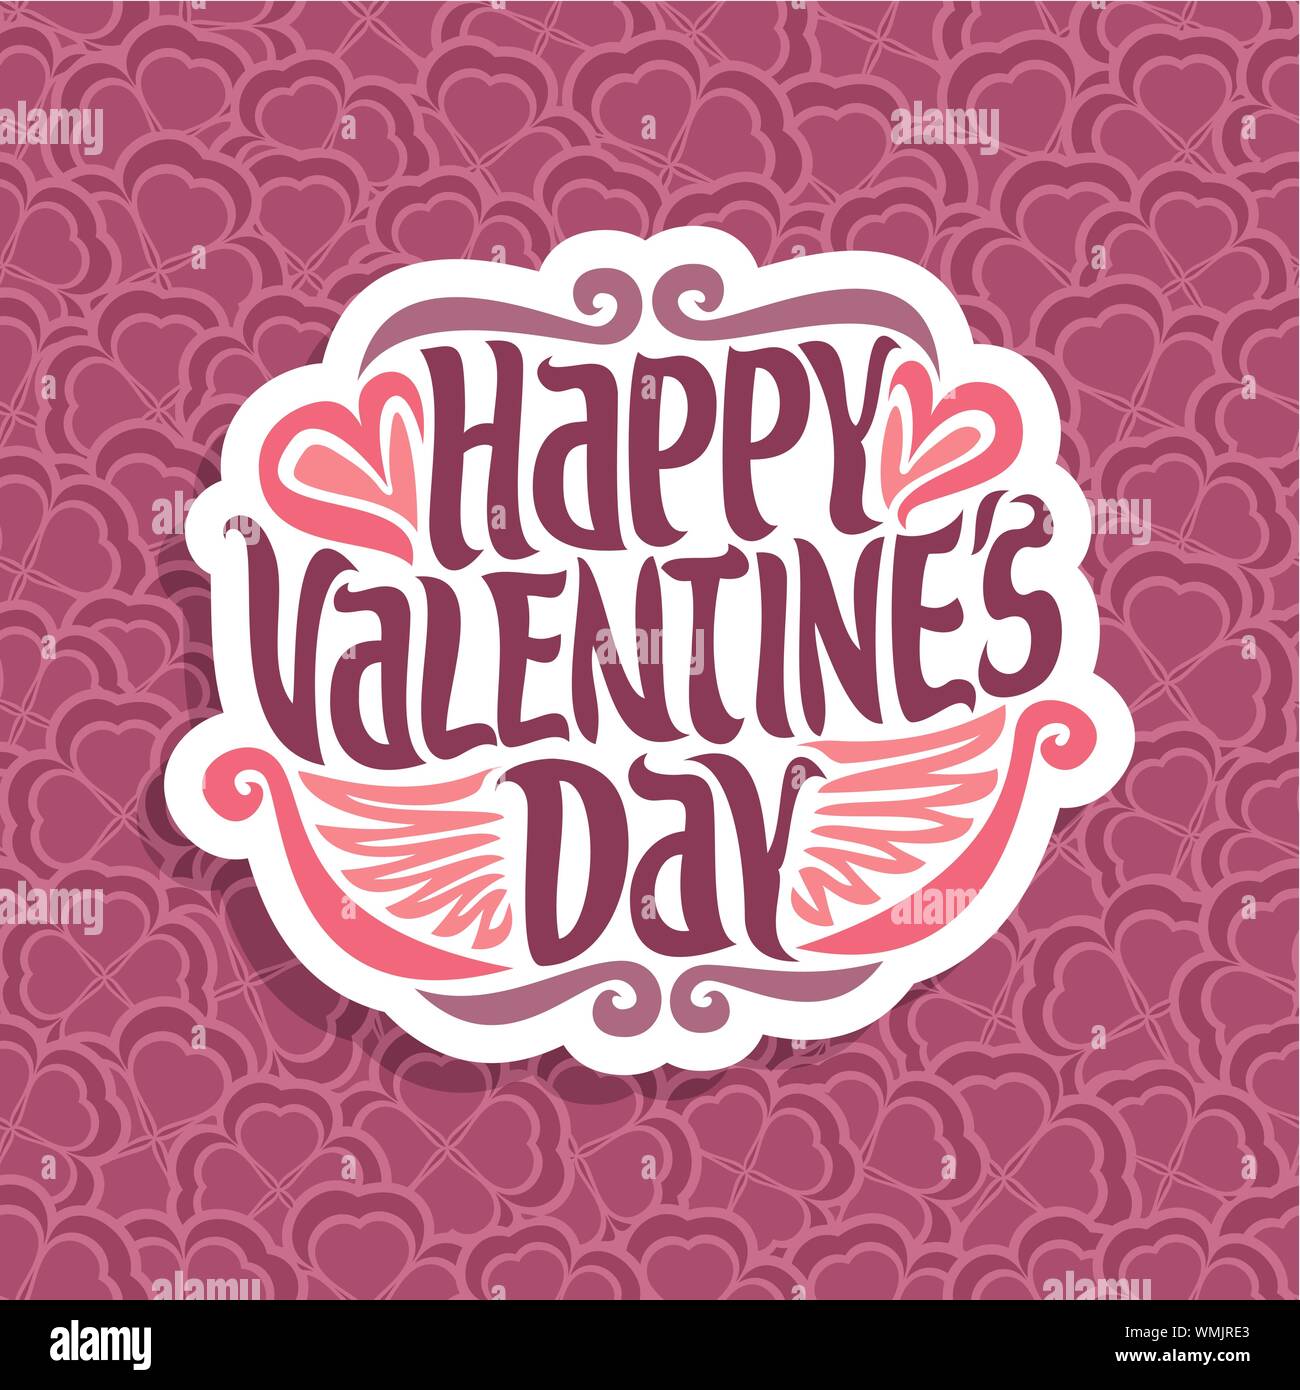 Vektor abstrakte Logo für Happy Valentine's Day auf floral background. Stock Vektor